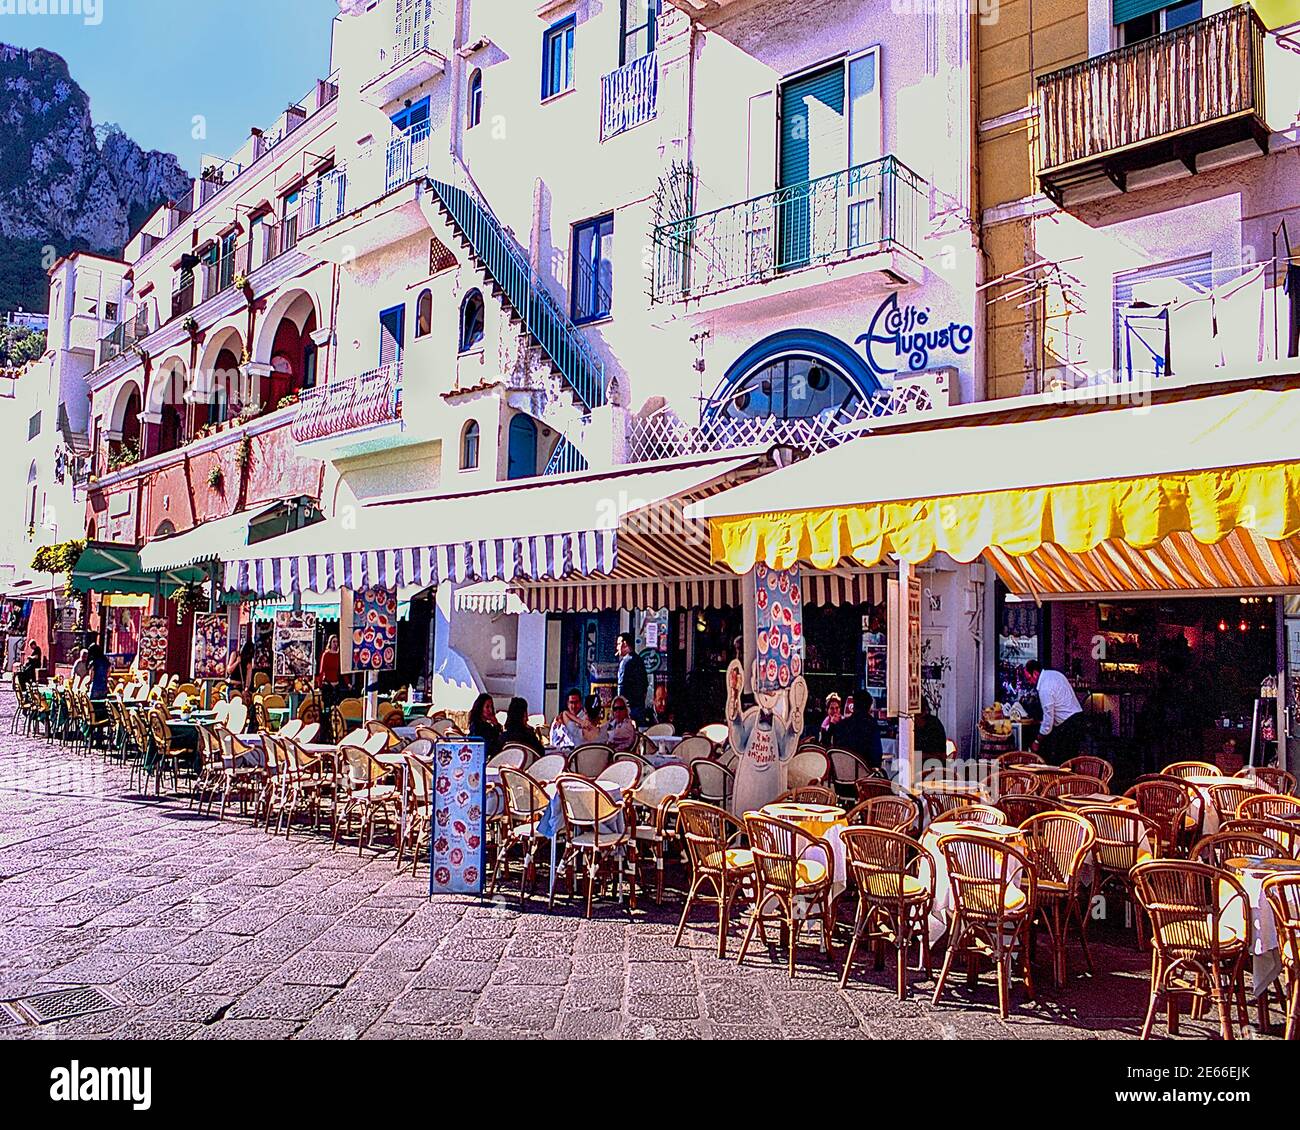 Image of Via Cristoforo Colombo's Restaurant Row on the Isle of Capri, Italy Stock Photo